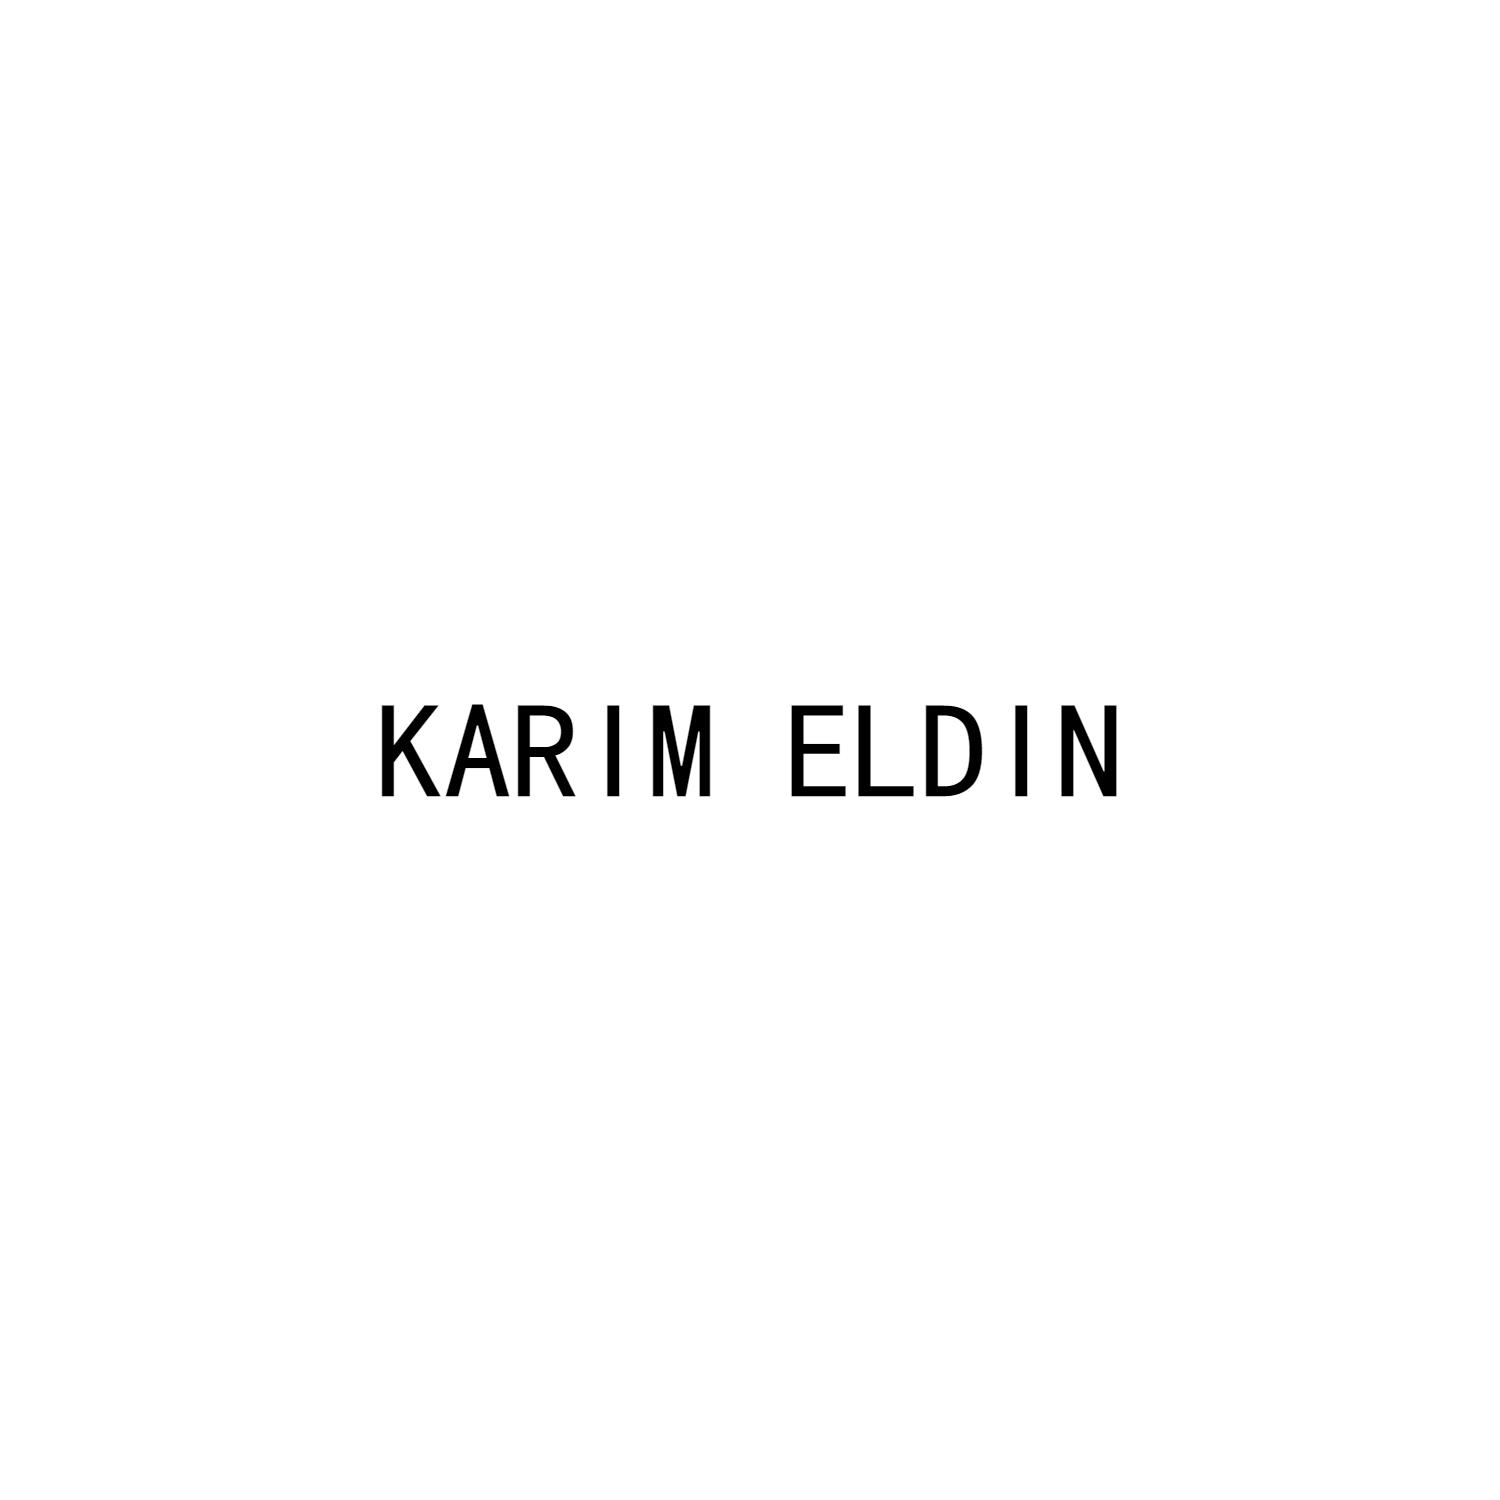 KARIM ELDIN